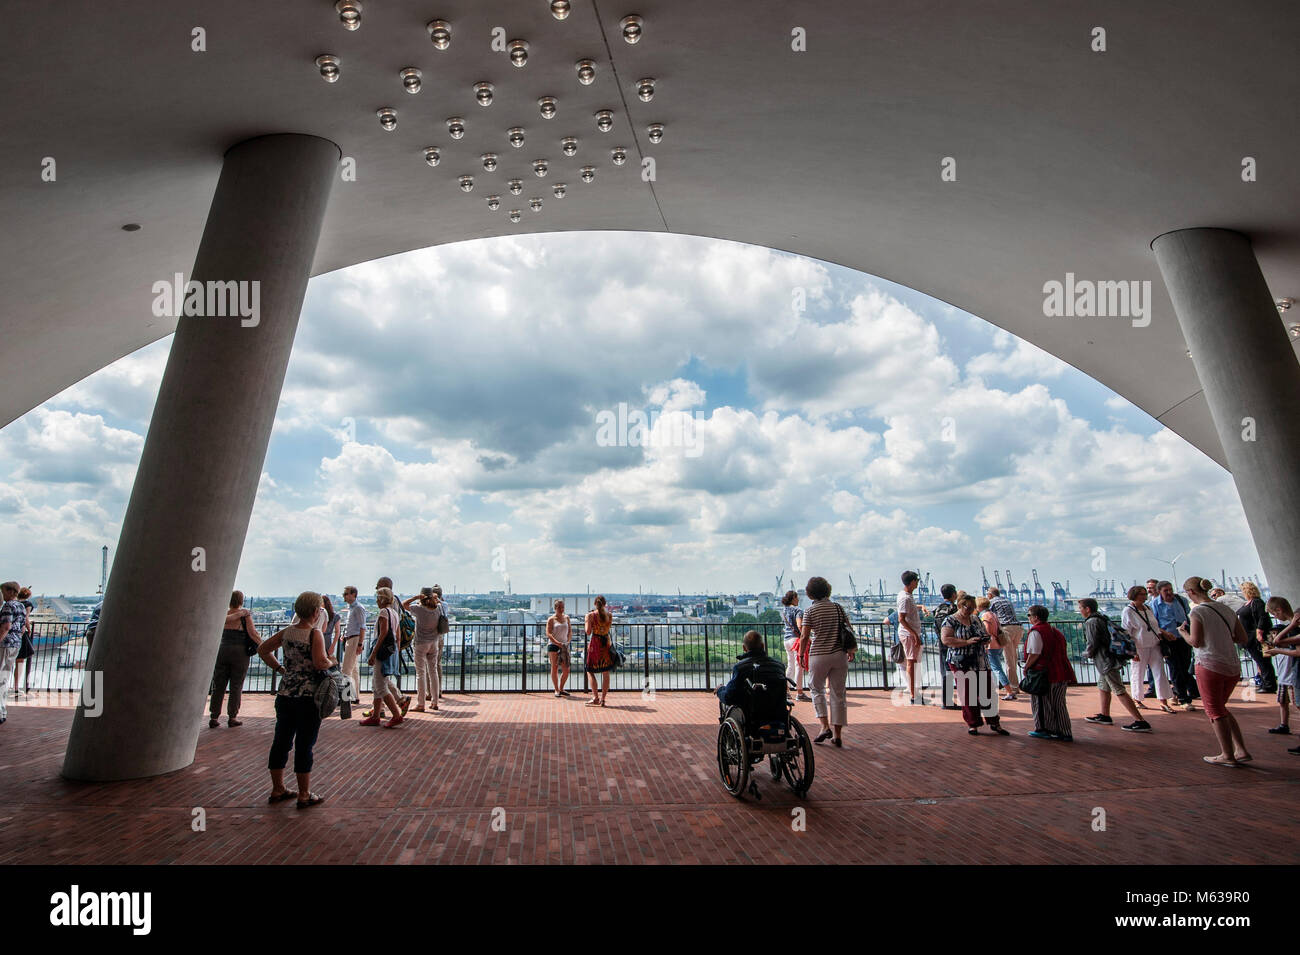 Aussichtsplattform Plaza der Elbphilharmonie Stock Photo - Alamy